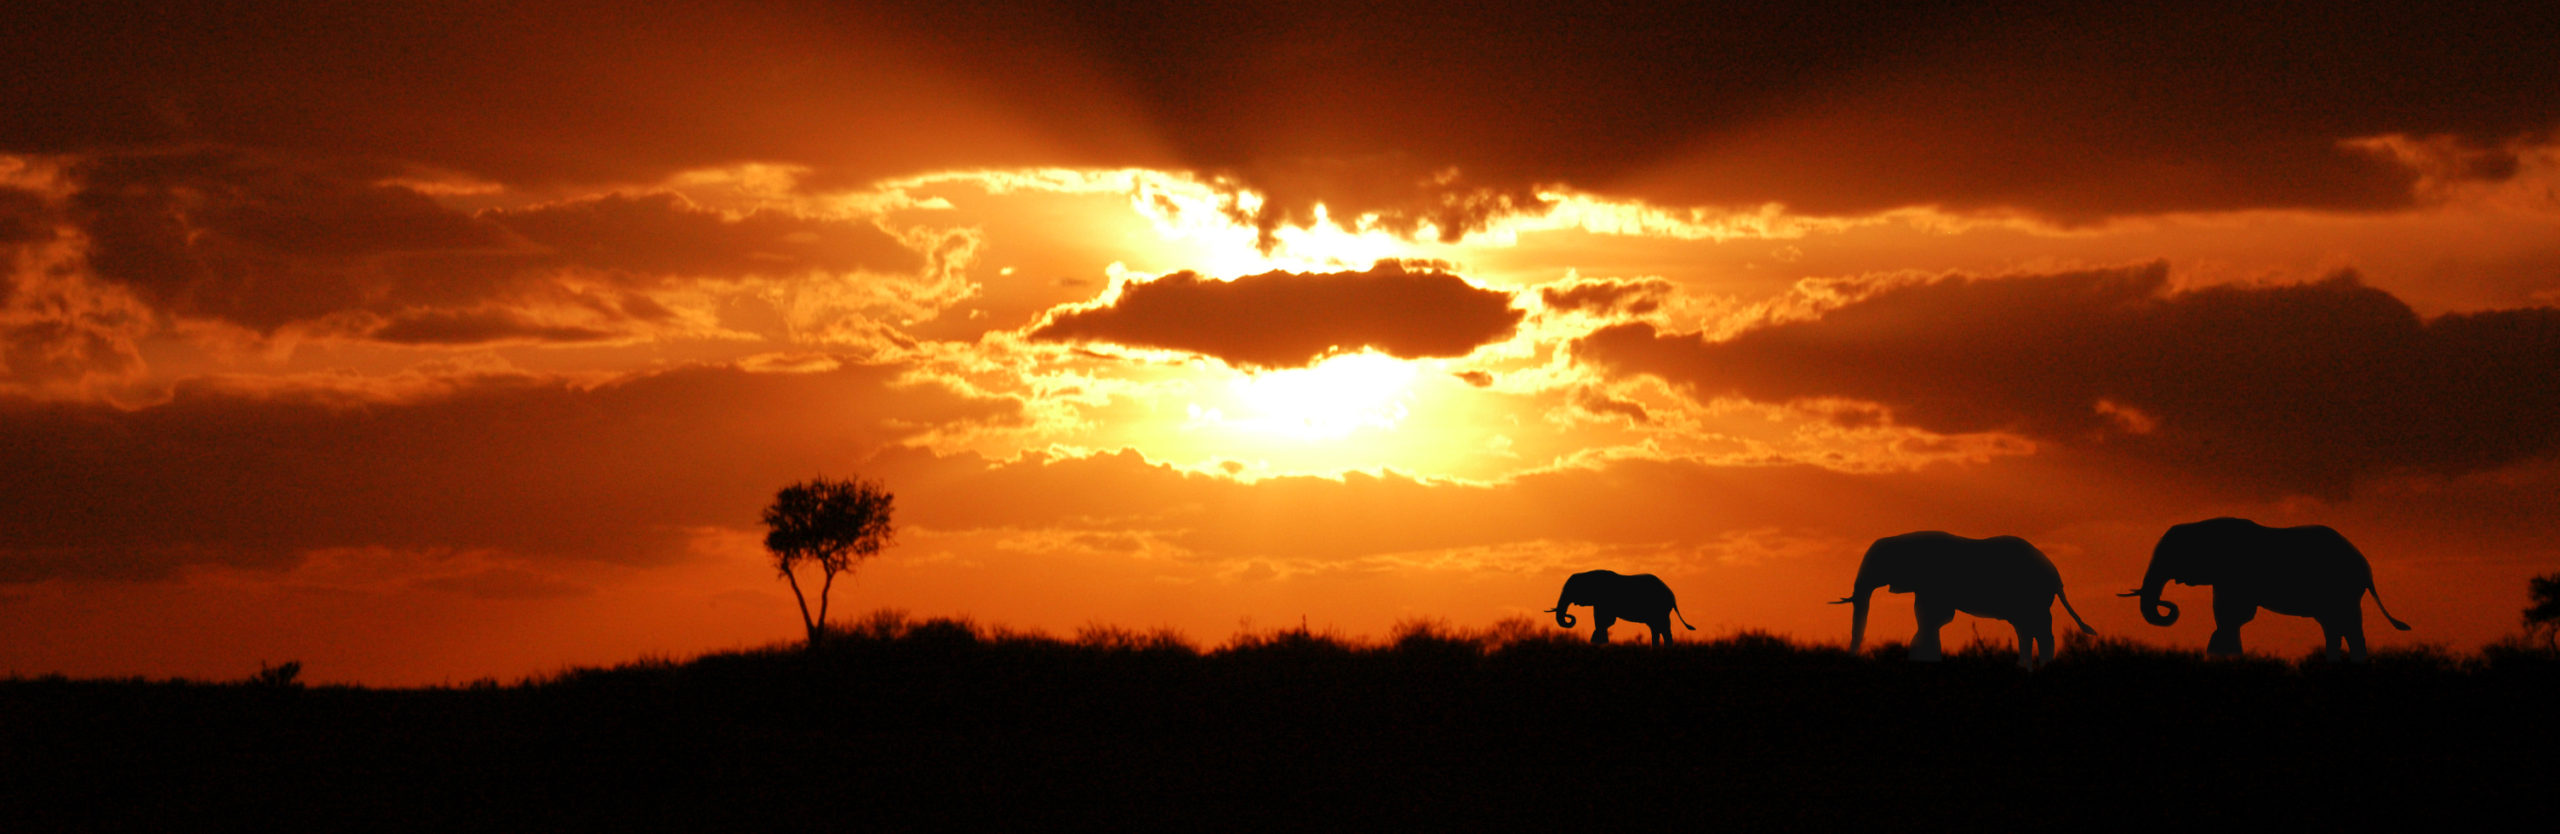 Elephants at Masai Mara